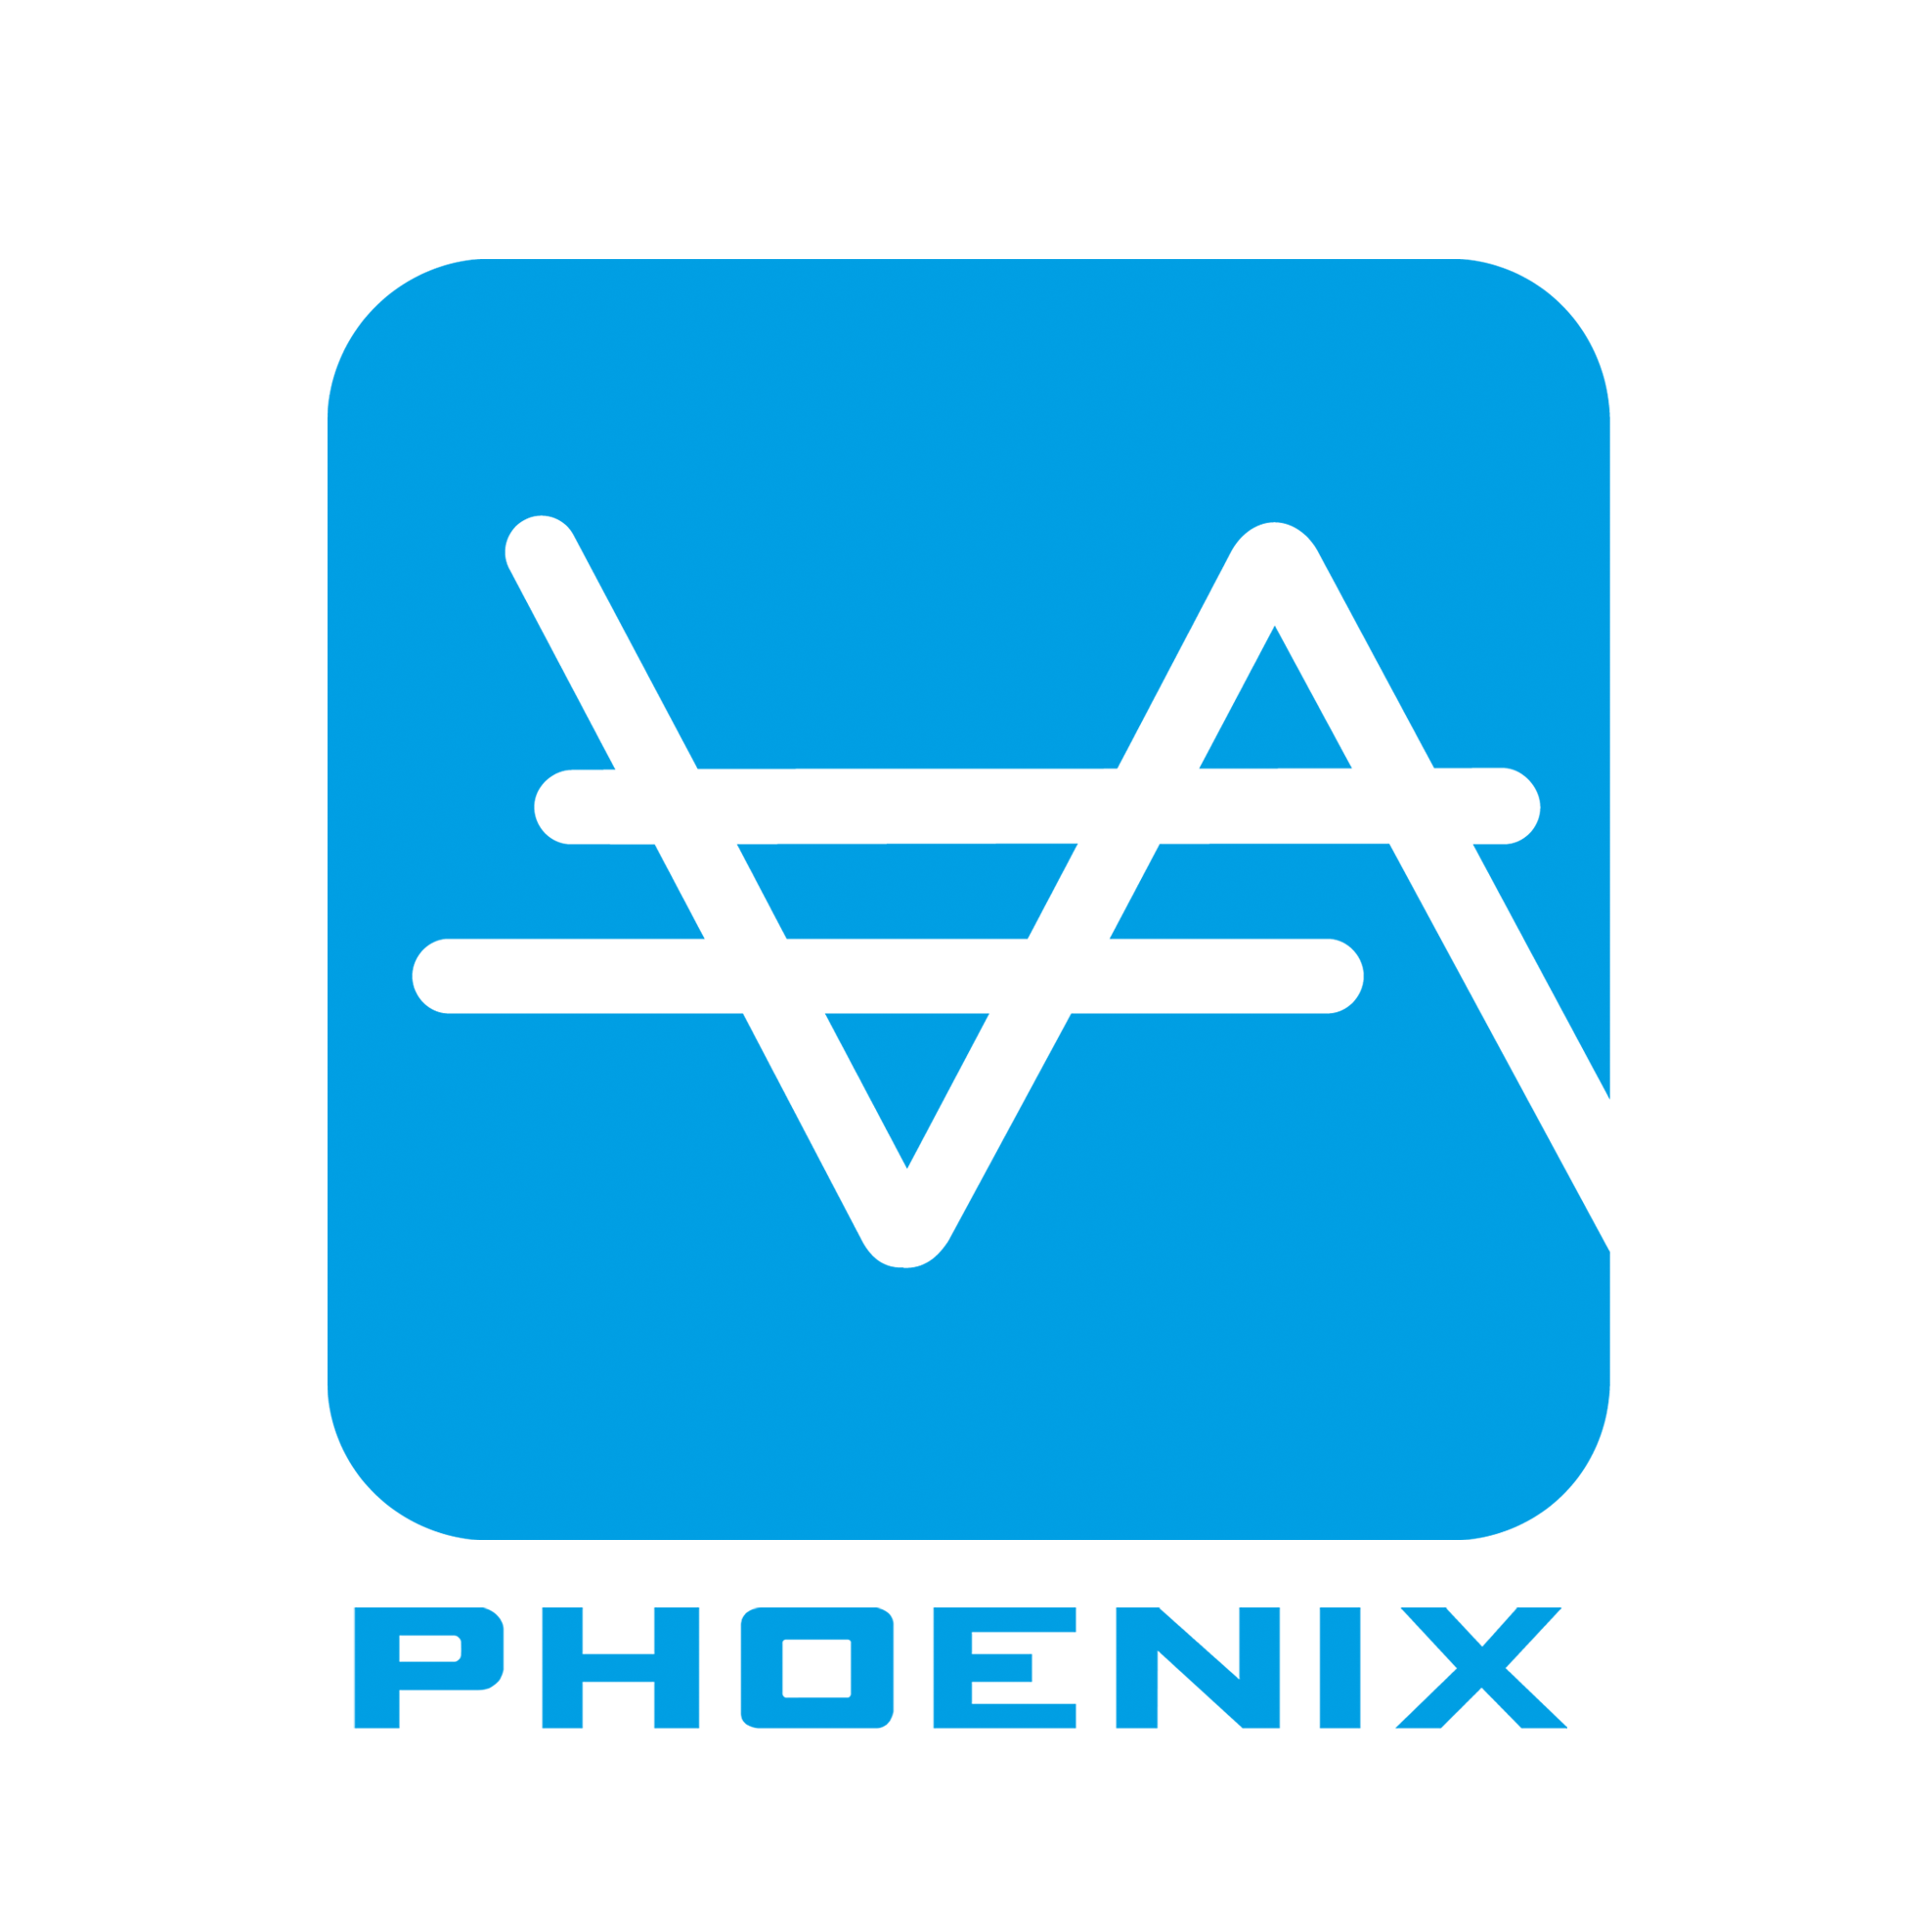 The Phoenix Professional Audio